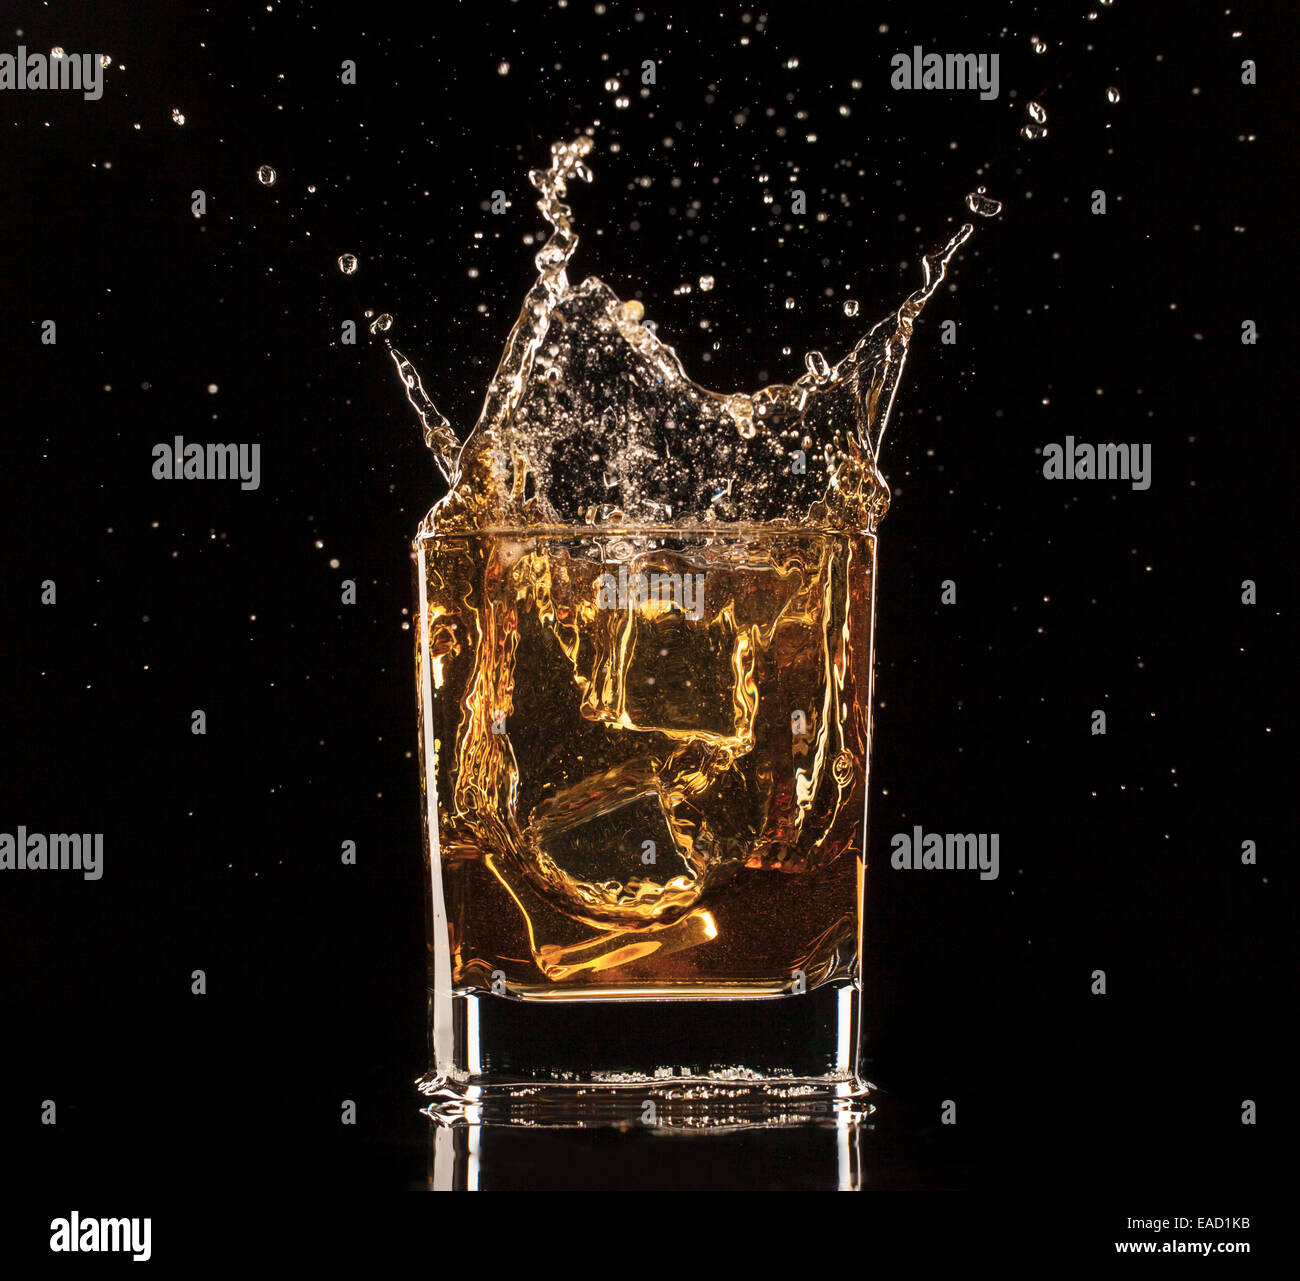 Isolated shot of whiskey with splash on black background Stock Photo